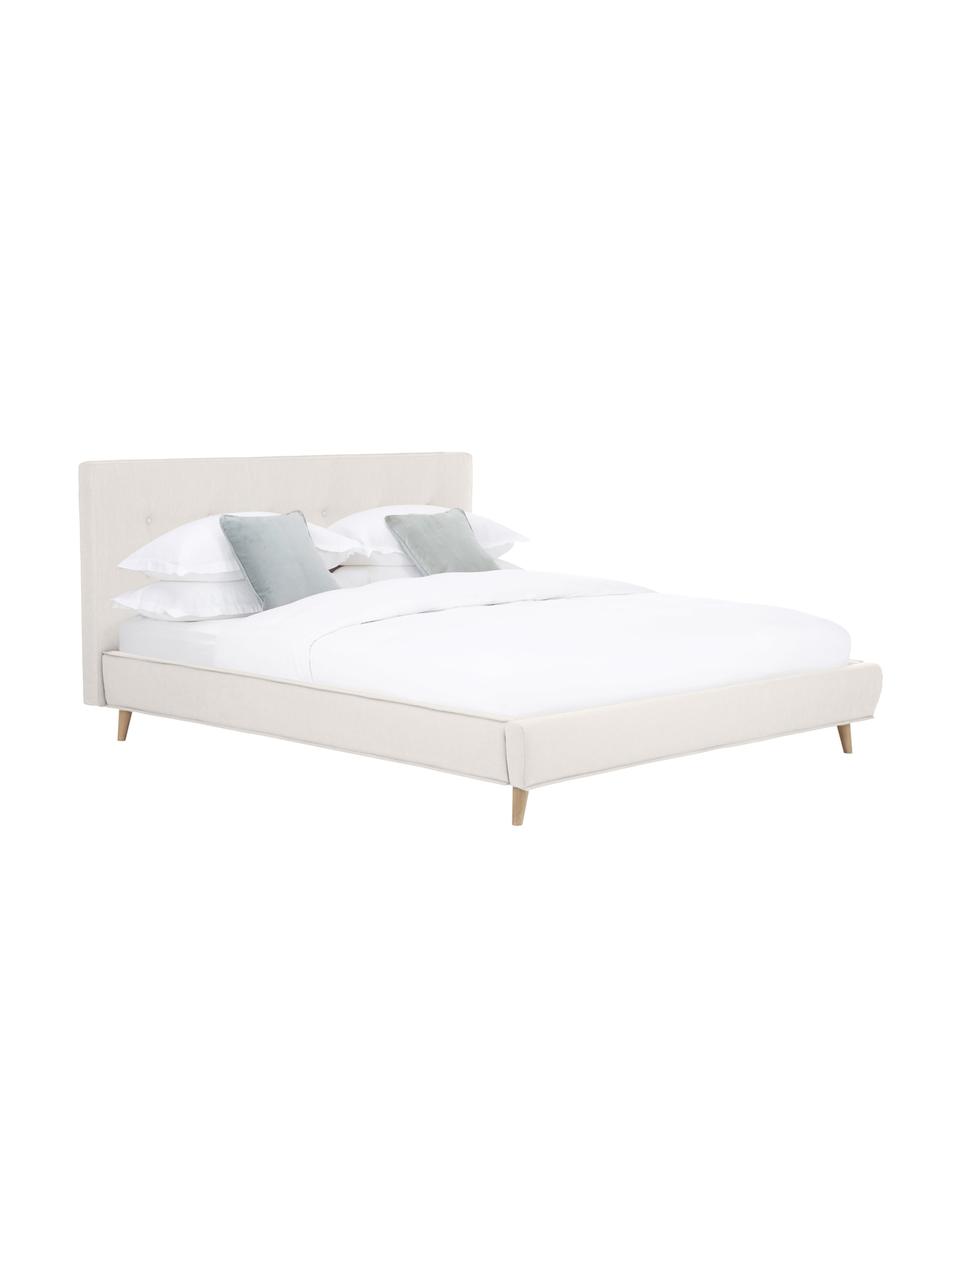 Čalouněná postel s dřevěnými nohami Moon, Greige, Š 140 cm, D 200 cm